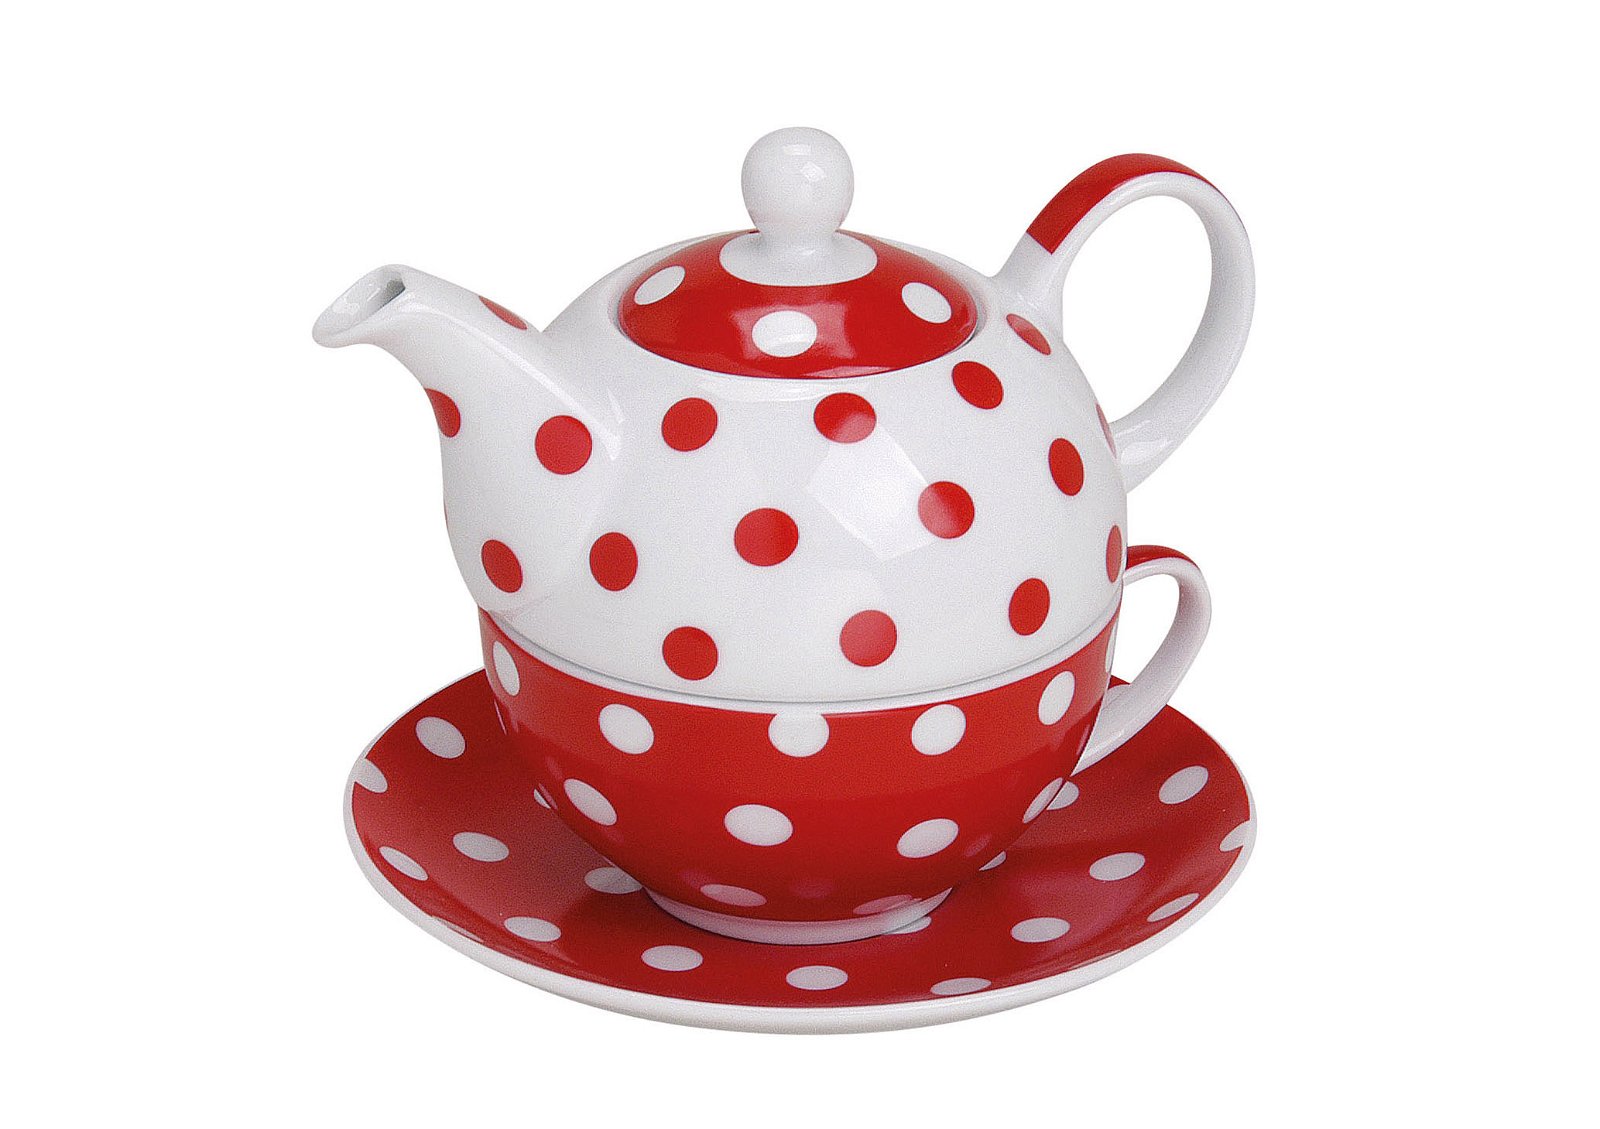 Teacup-set w. cup+plate ass. porcelain 15x14cm